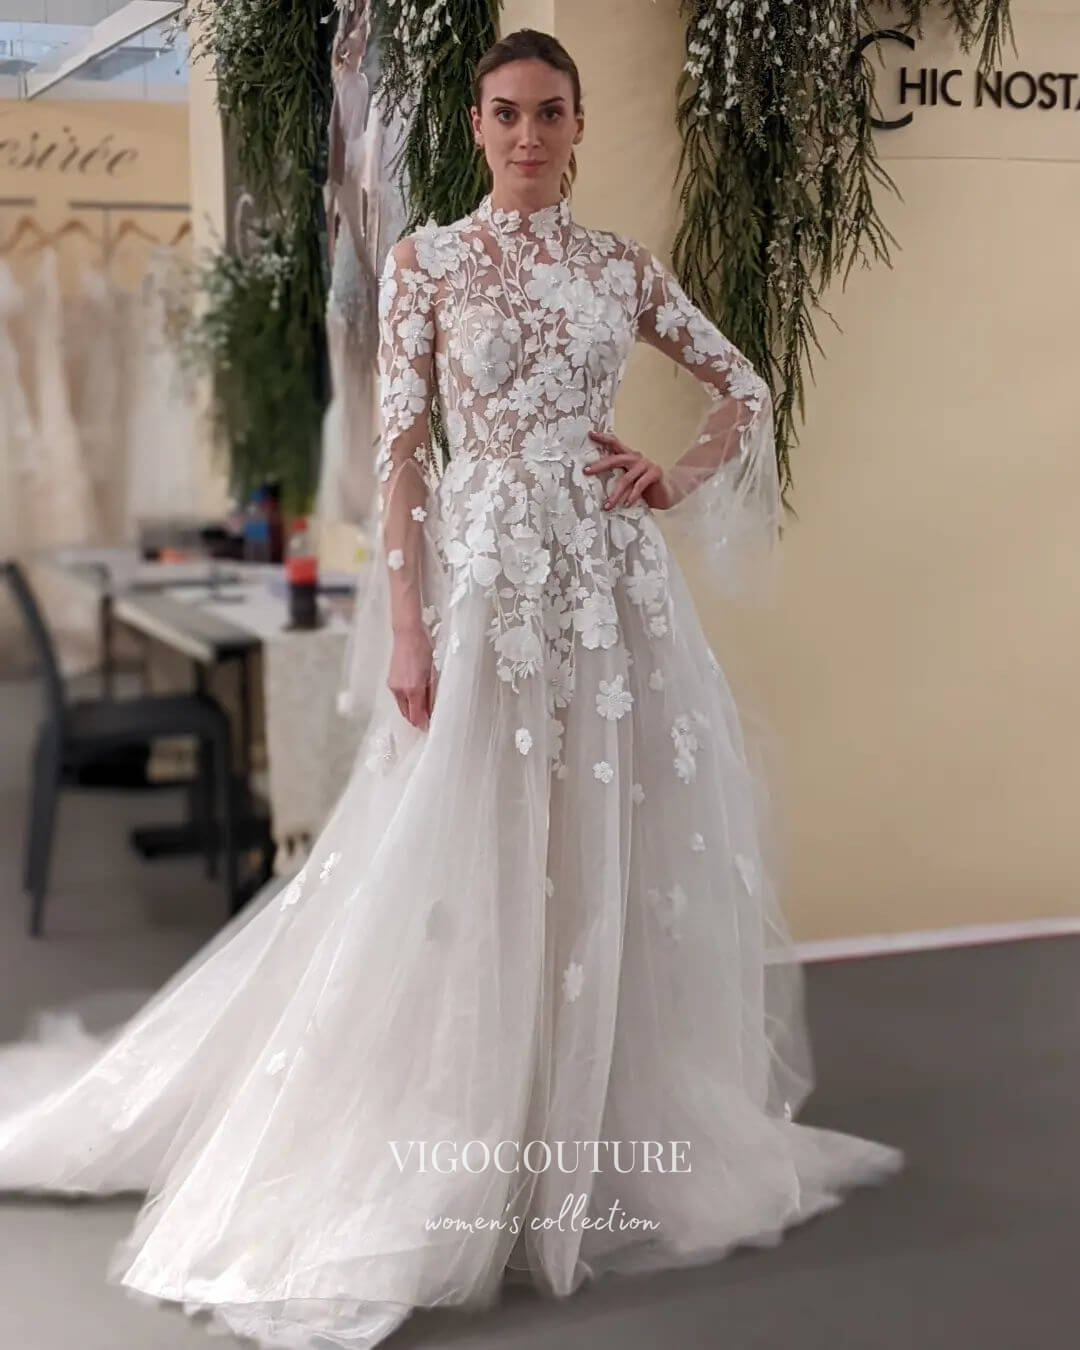 High Neck Wedding Dresses & Gowns | Online Bridal Shop – Olivia Bottega